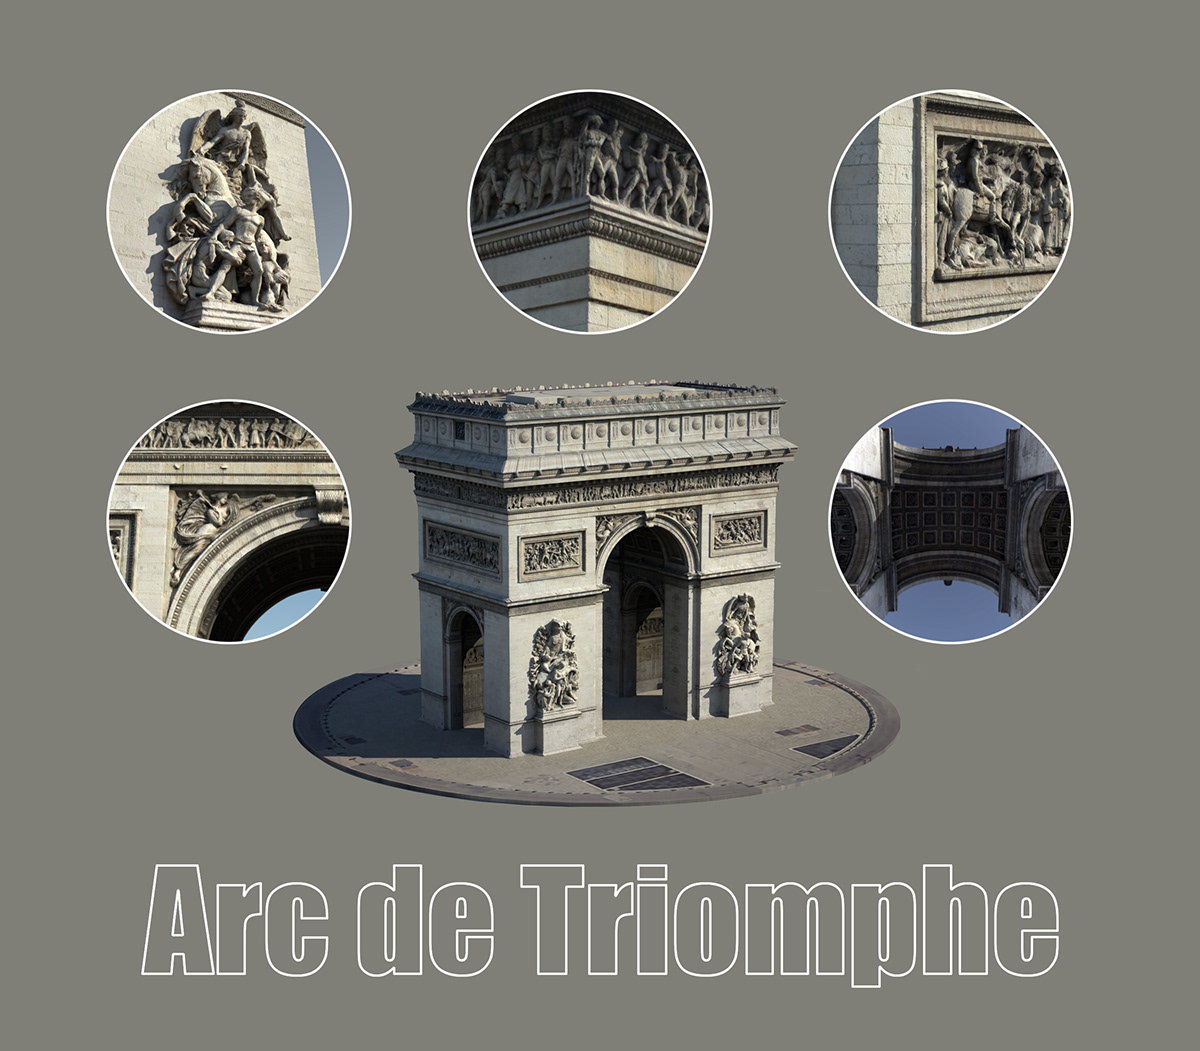 3d modeling 3d vertual desigh arc de triomphe city scape Europe france landscap design Paris paris 3d city model sculpting 